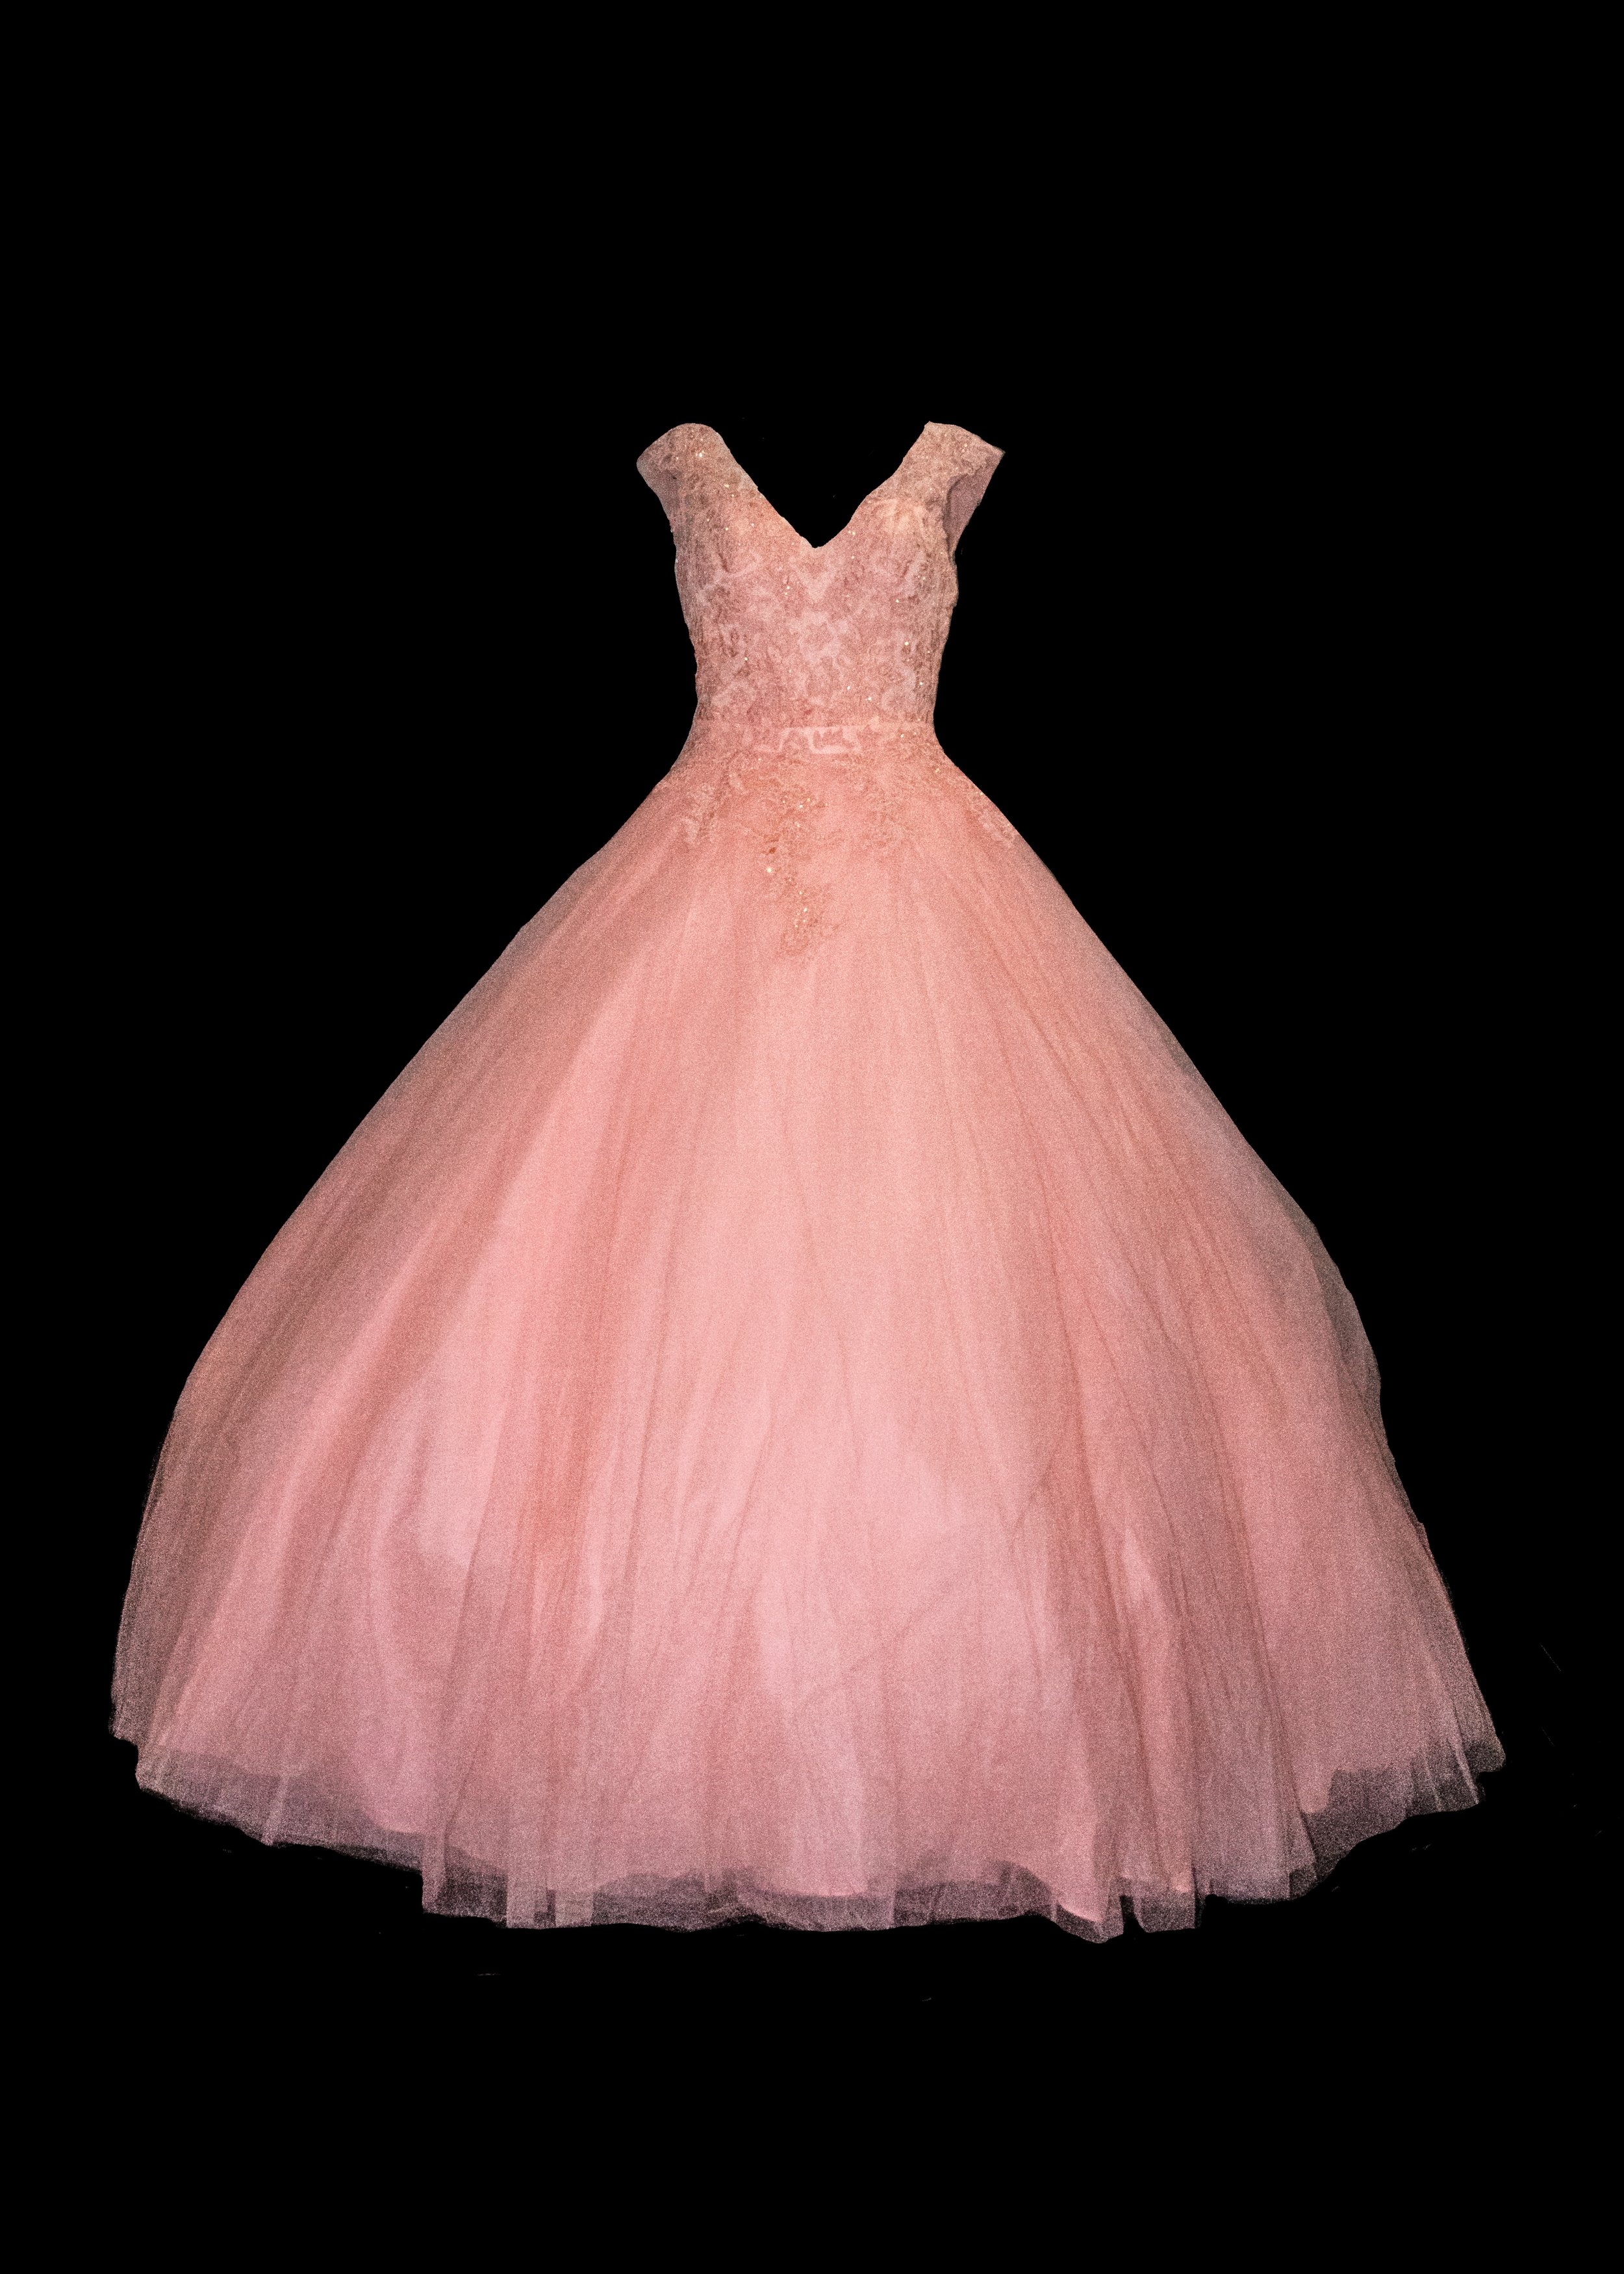 dark pink dress A.jpg